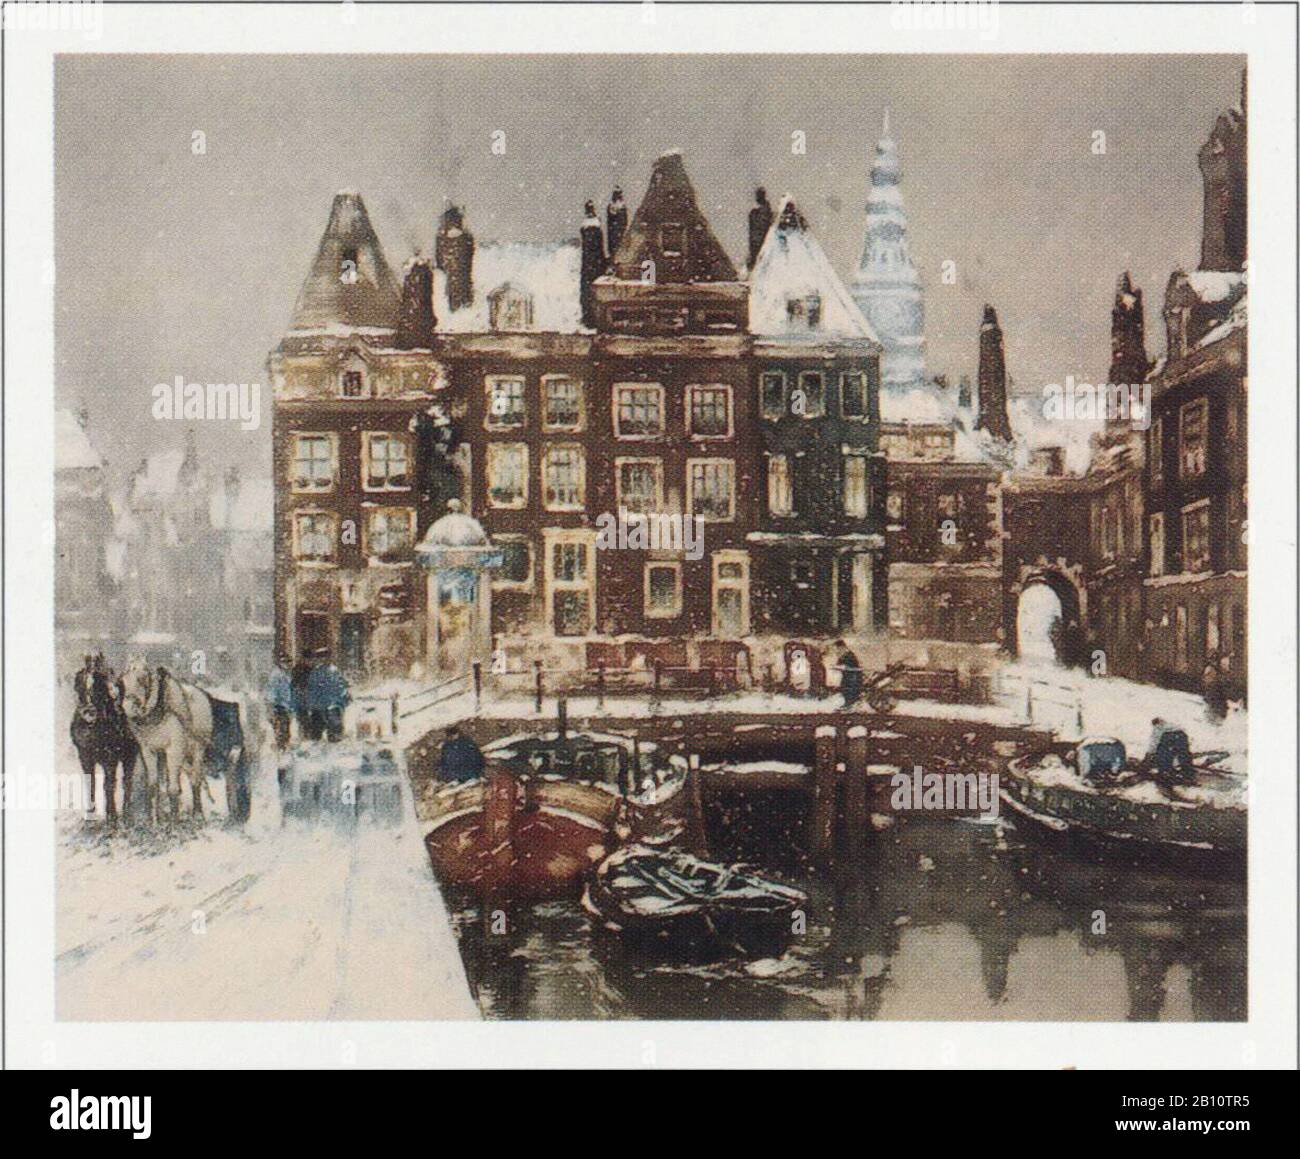 Presa de Amsterdam - Ilustración de Henri Caux (1858 - 1944) Foto de stock